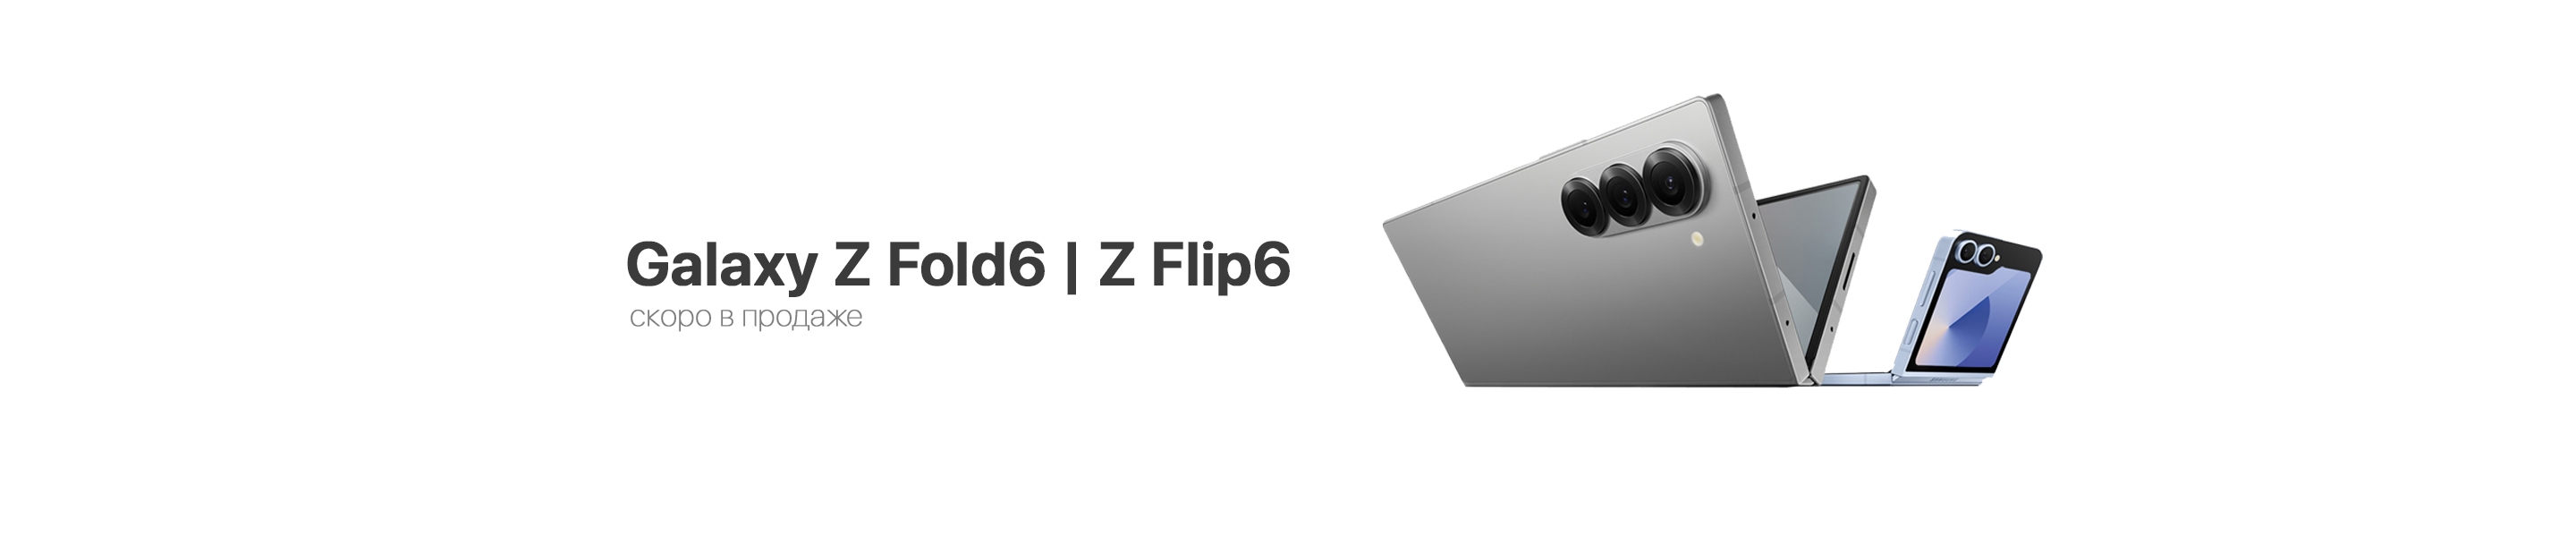 Z Fold6 | Z Flip6